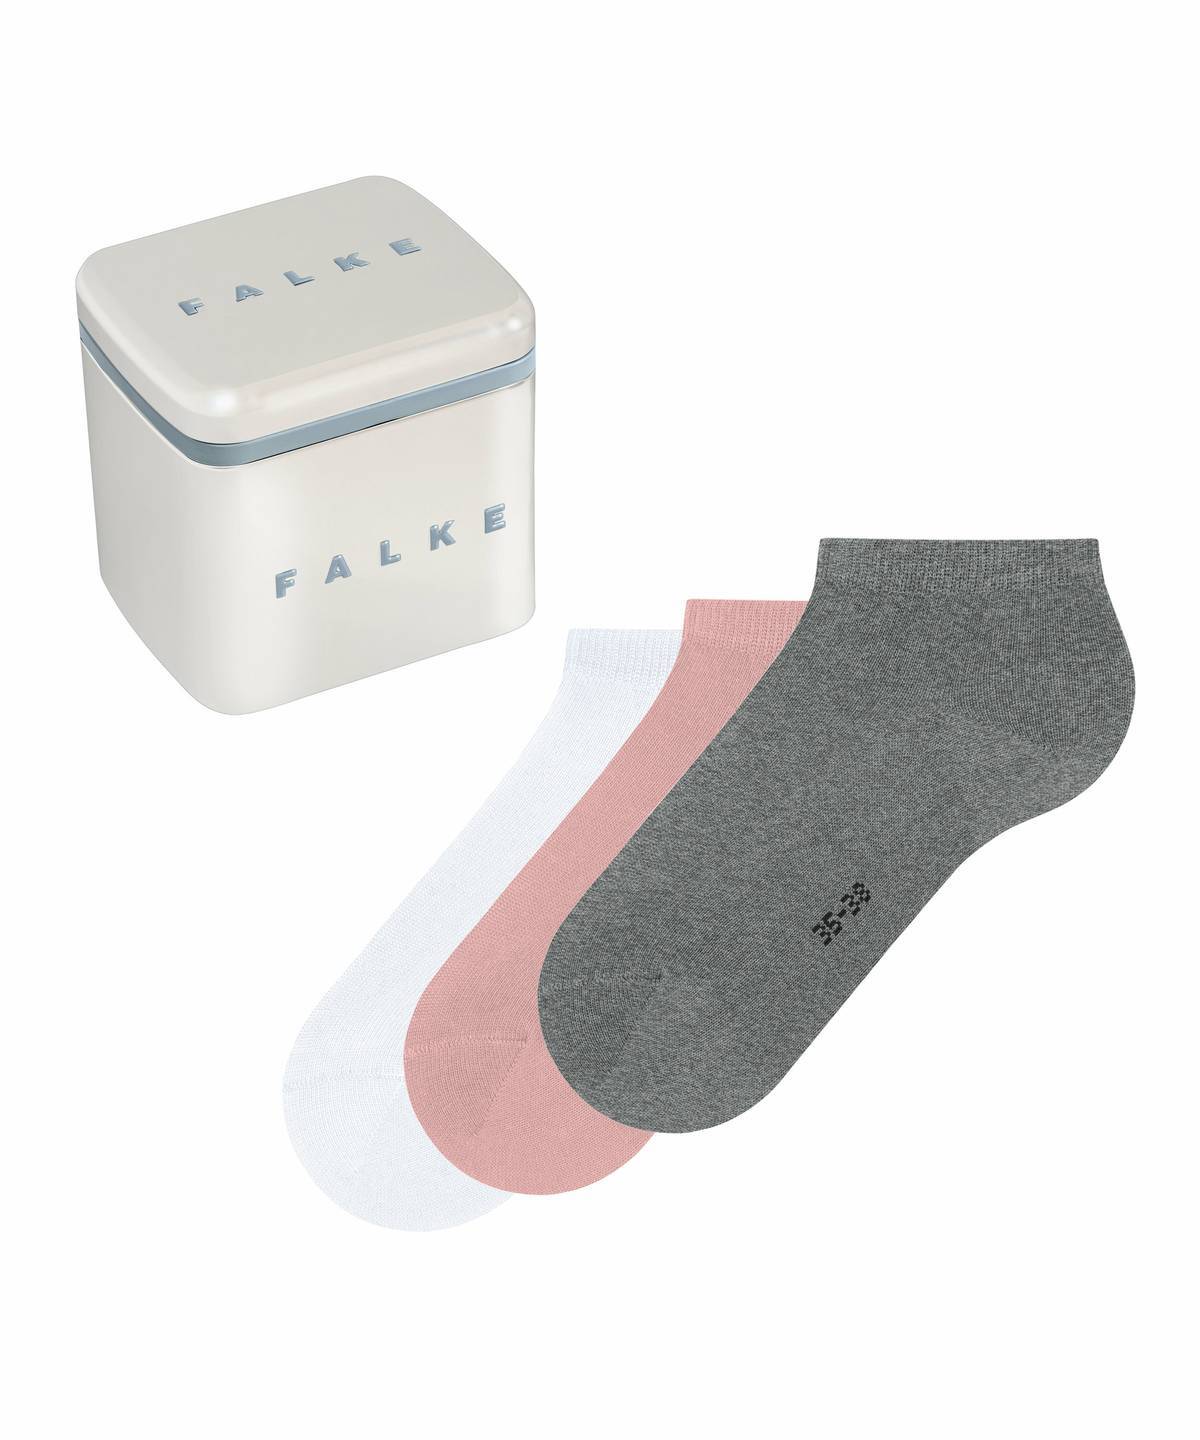 Falke Damen Socken One size Hersteller: Falke Bestellnummer:4031309199733